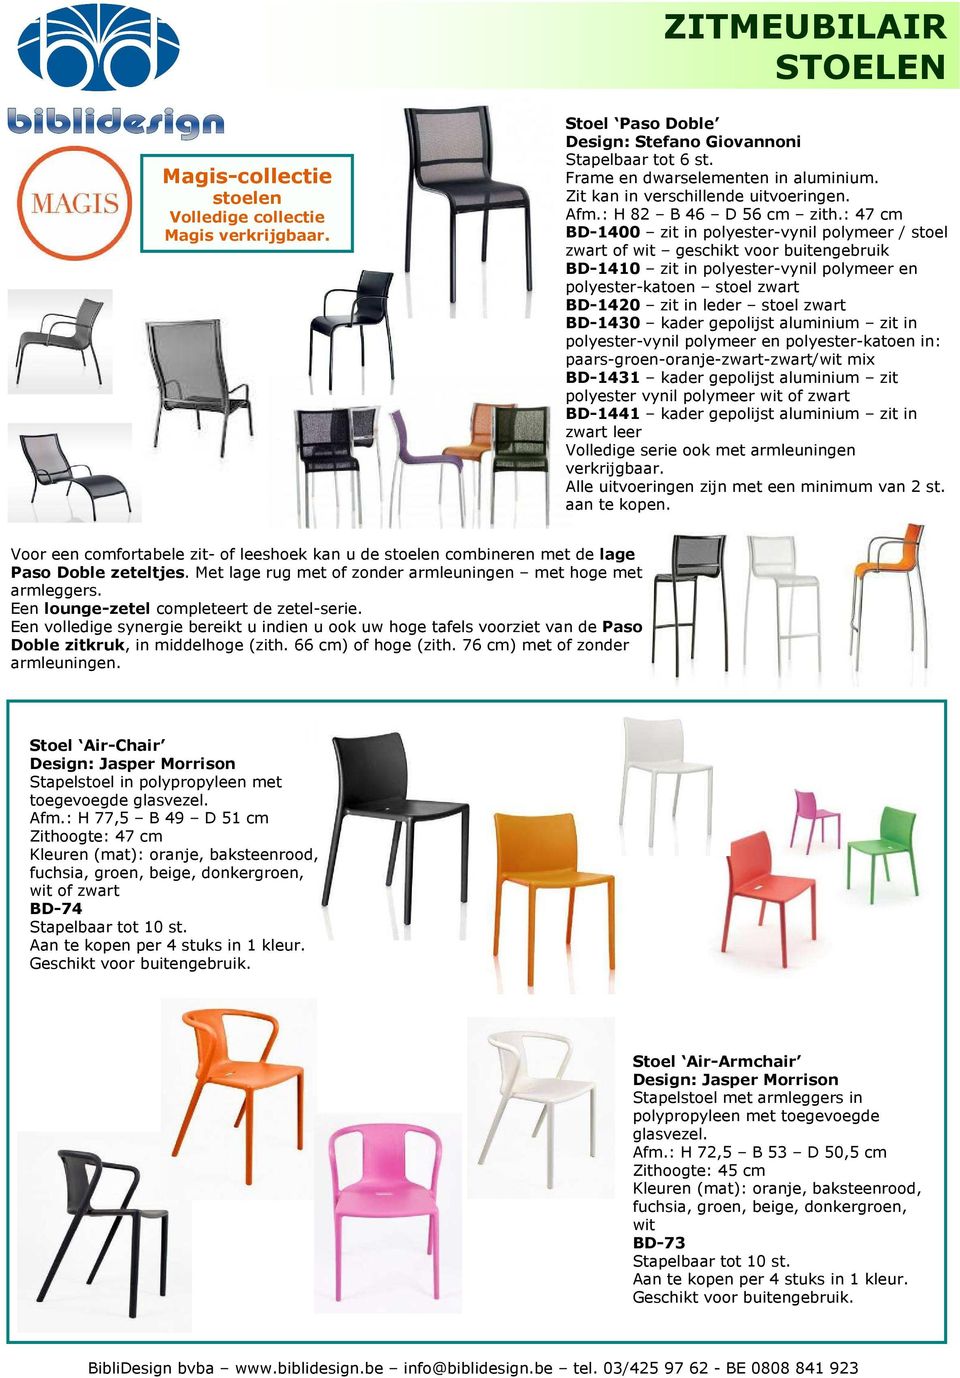 : 47 cm BD-1400 zit in polyester-vynil polymeer / stoel zwart of wit geschikt voor buitengebruik BD-1410 zit in polyester-vynil polymeer en polyester-katoen stoel zwart BD-1420 zit in leder stoel